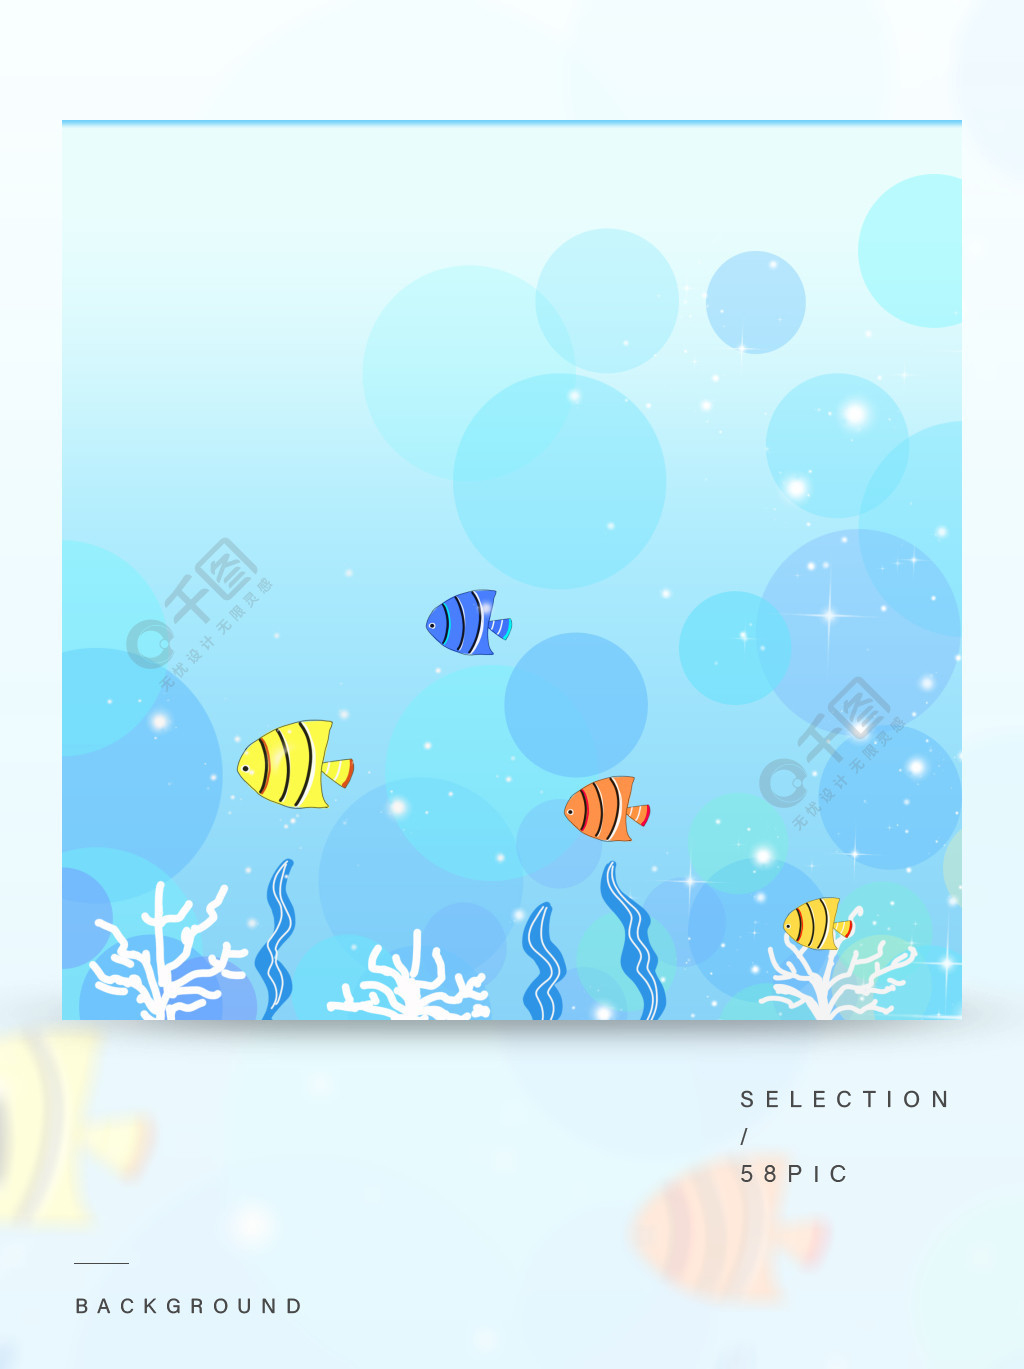 纯原创手绘卡通梦幻海底世界彩色鱼背景素材1年前发布